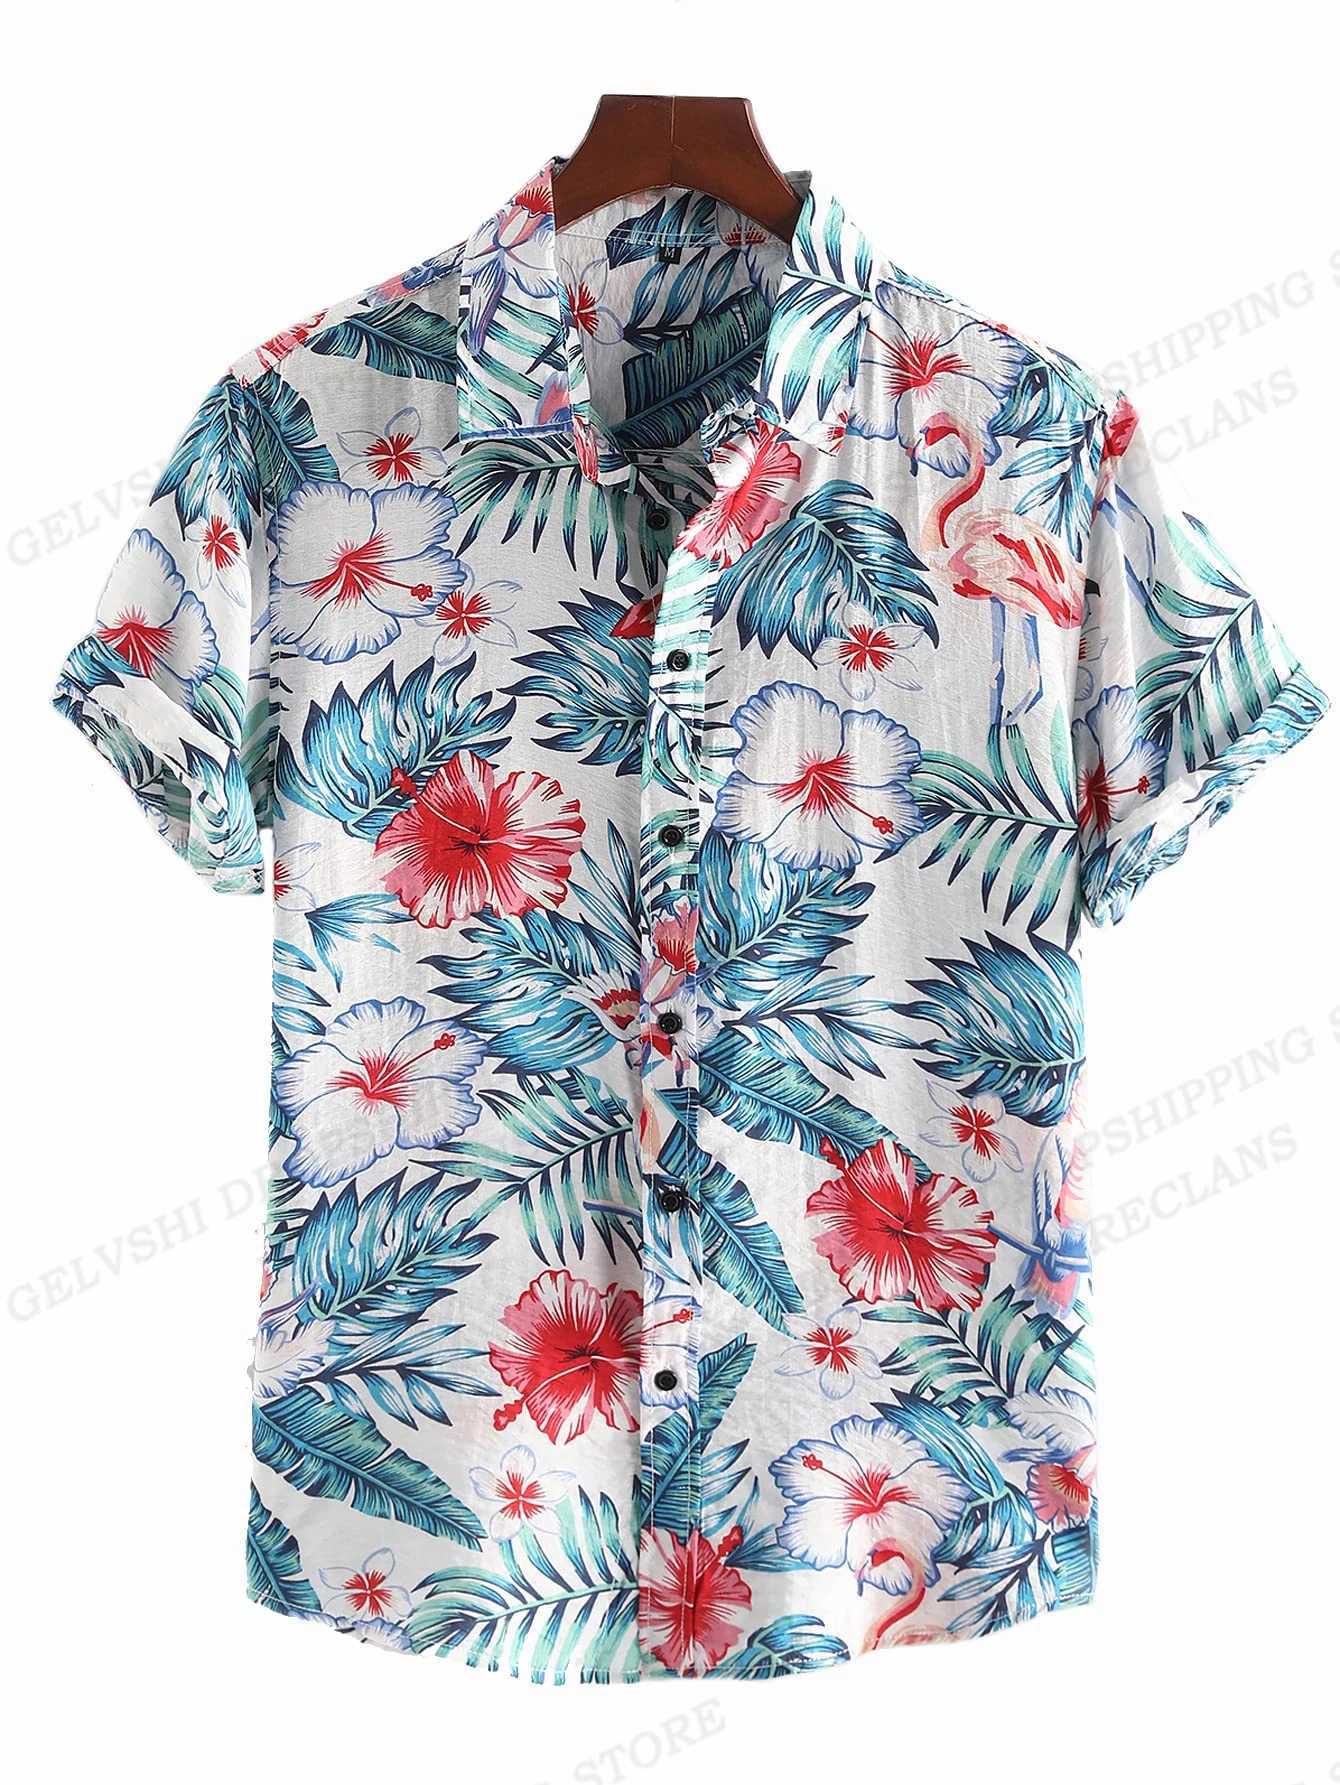 Camicie casual maschile camicie floreali camicie di moda camicie hawaian cagn vocazione campeggio spiaggia camicia lapel cuba lapel girare allo-down-down maschile abbigliamento 240424